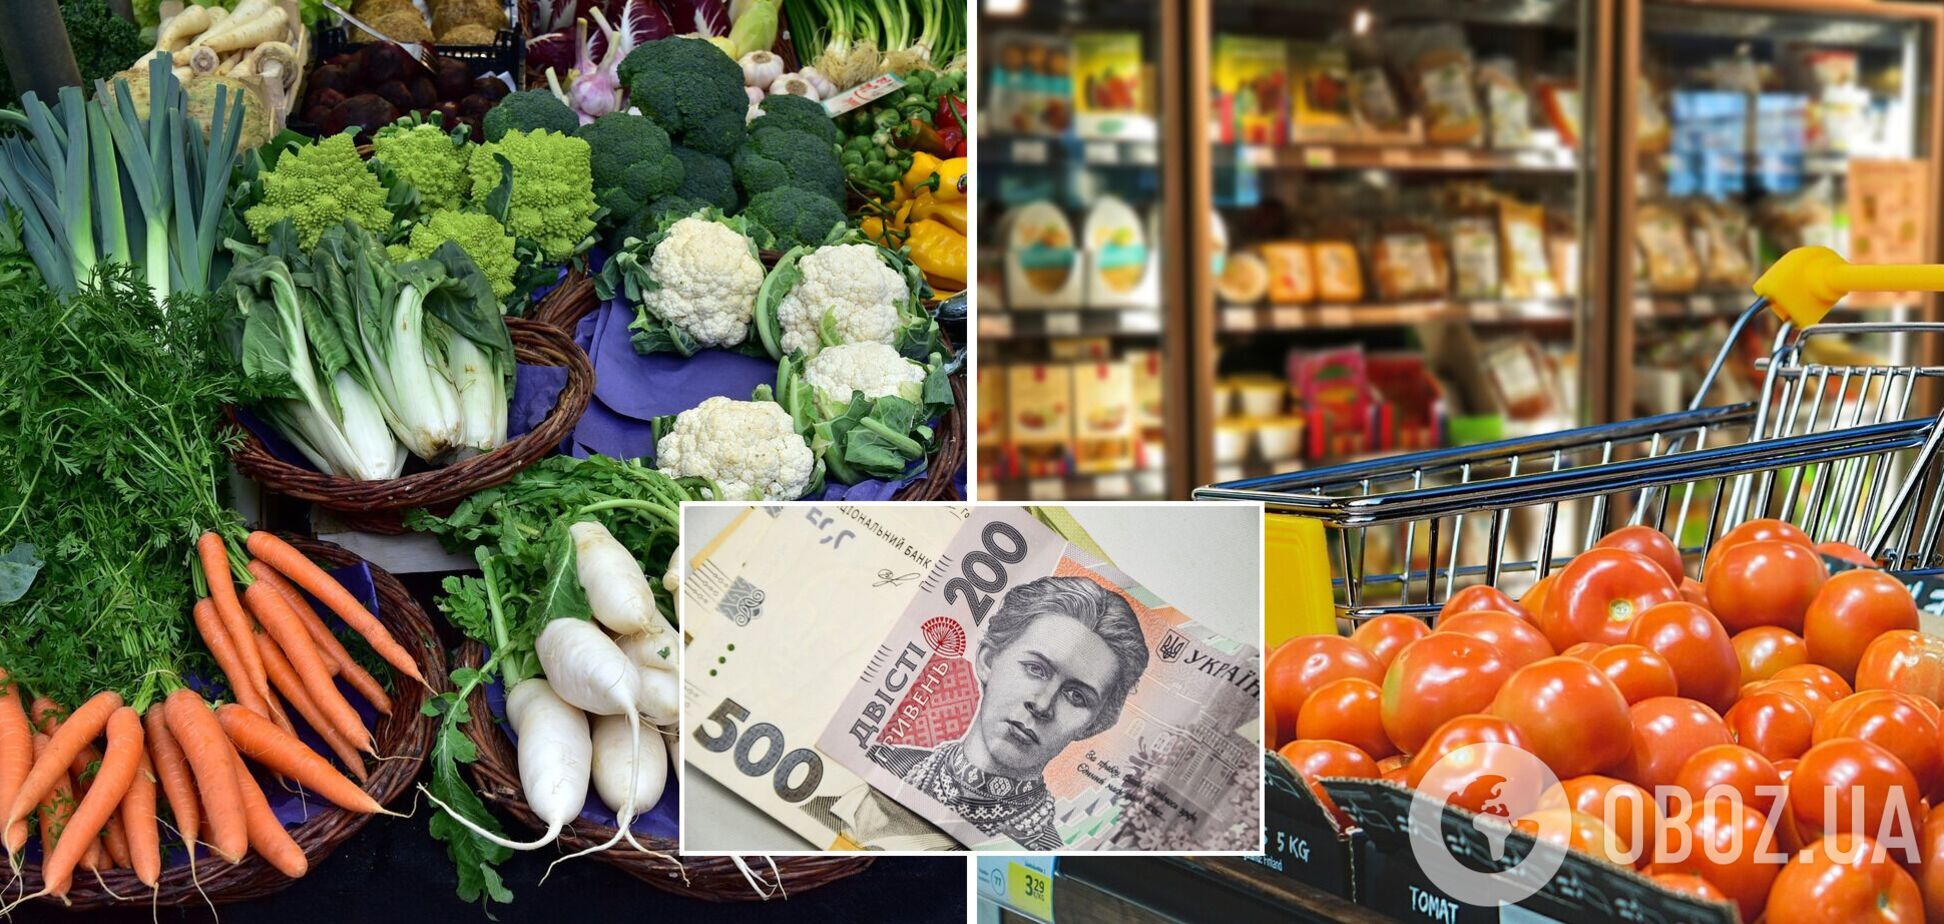 Цены на овощи в Украине снизятся позже прогнозируемого